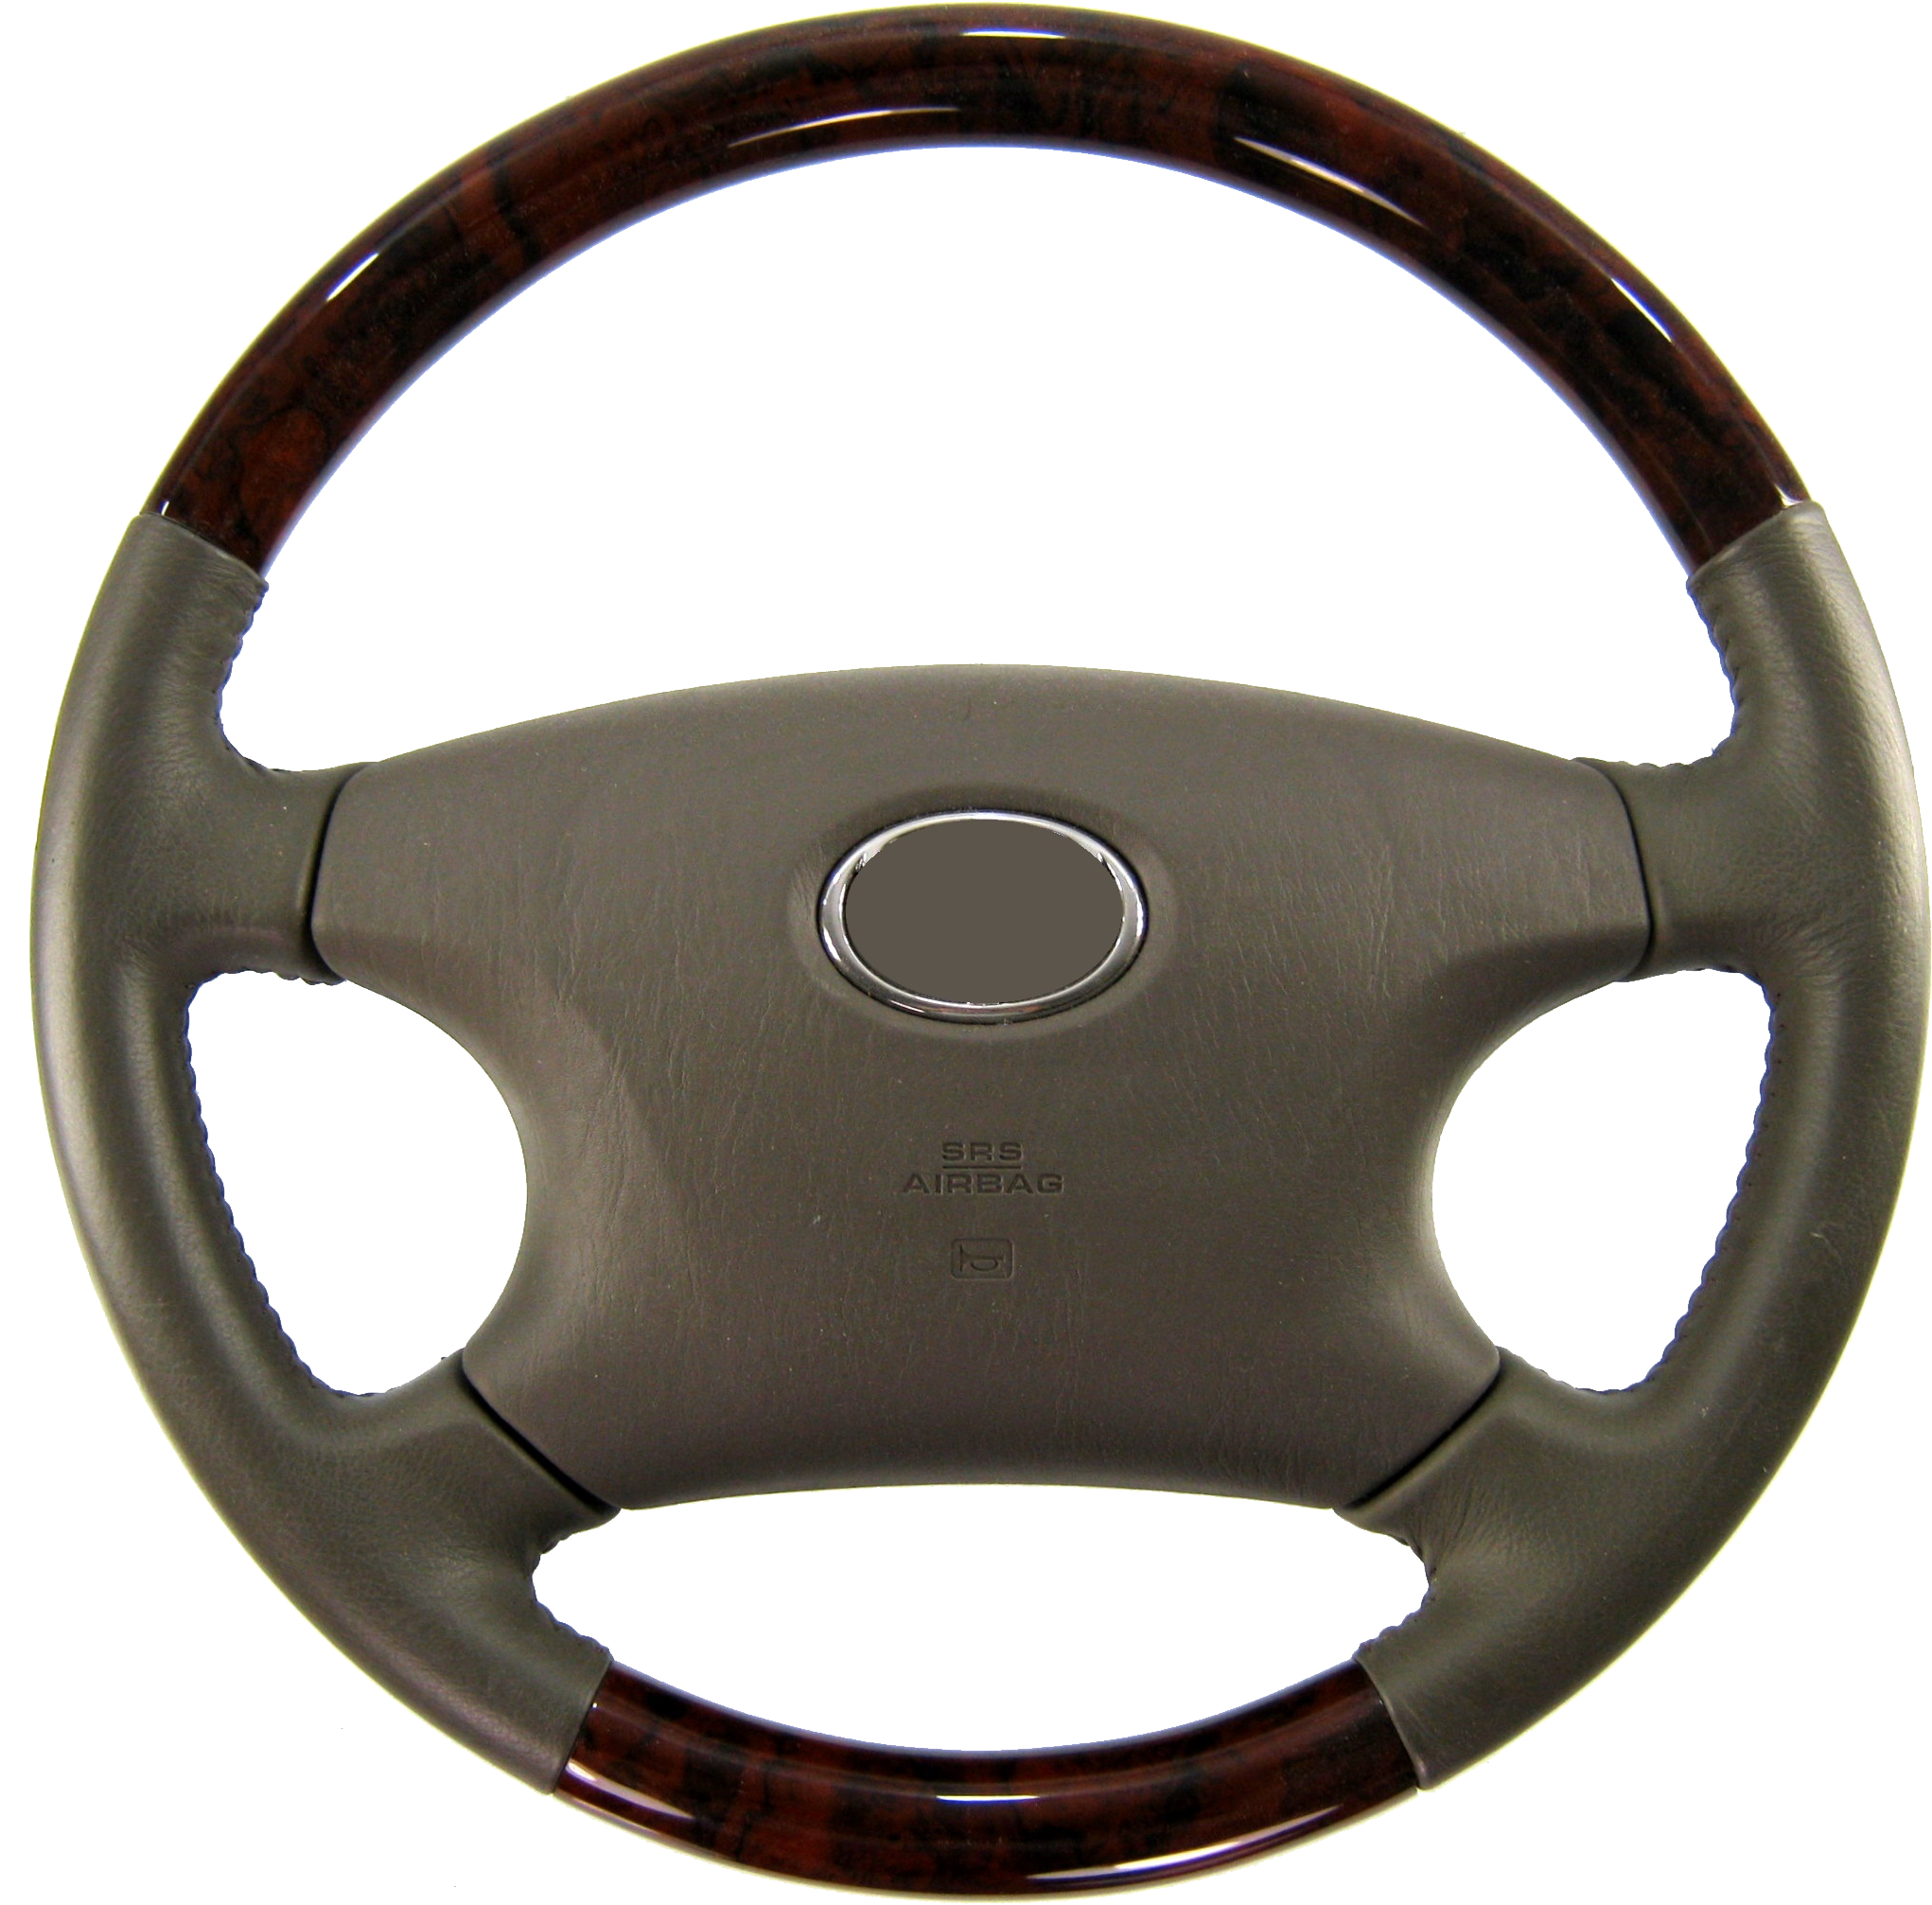 Steering Wheel PNG Photo